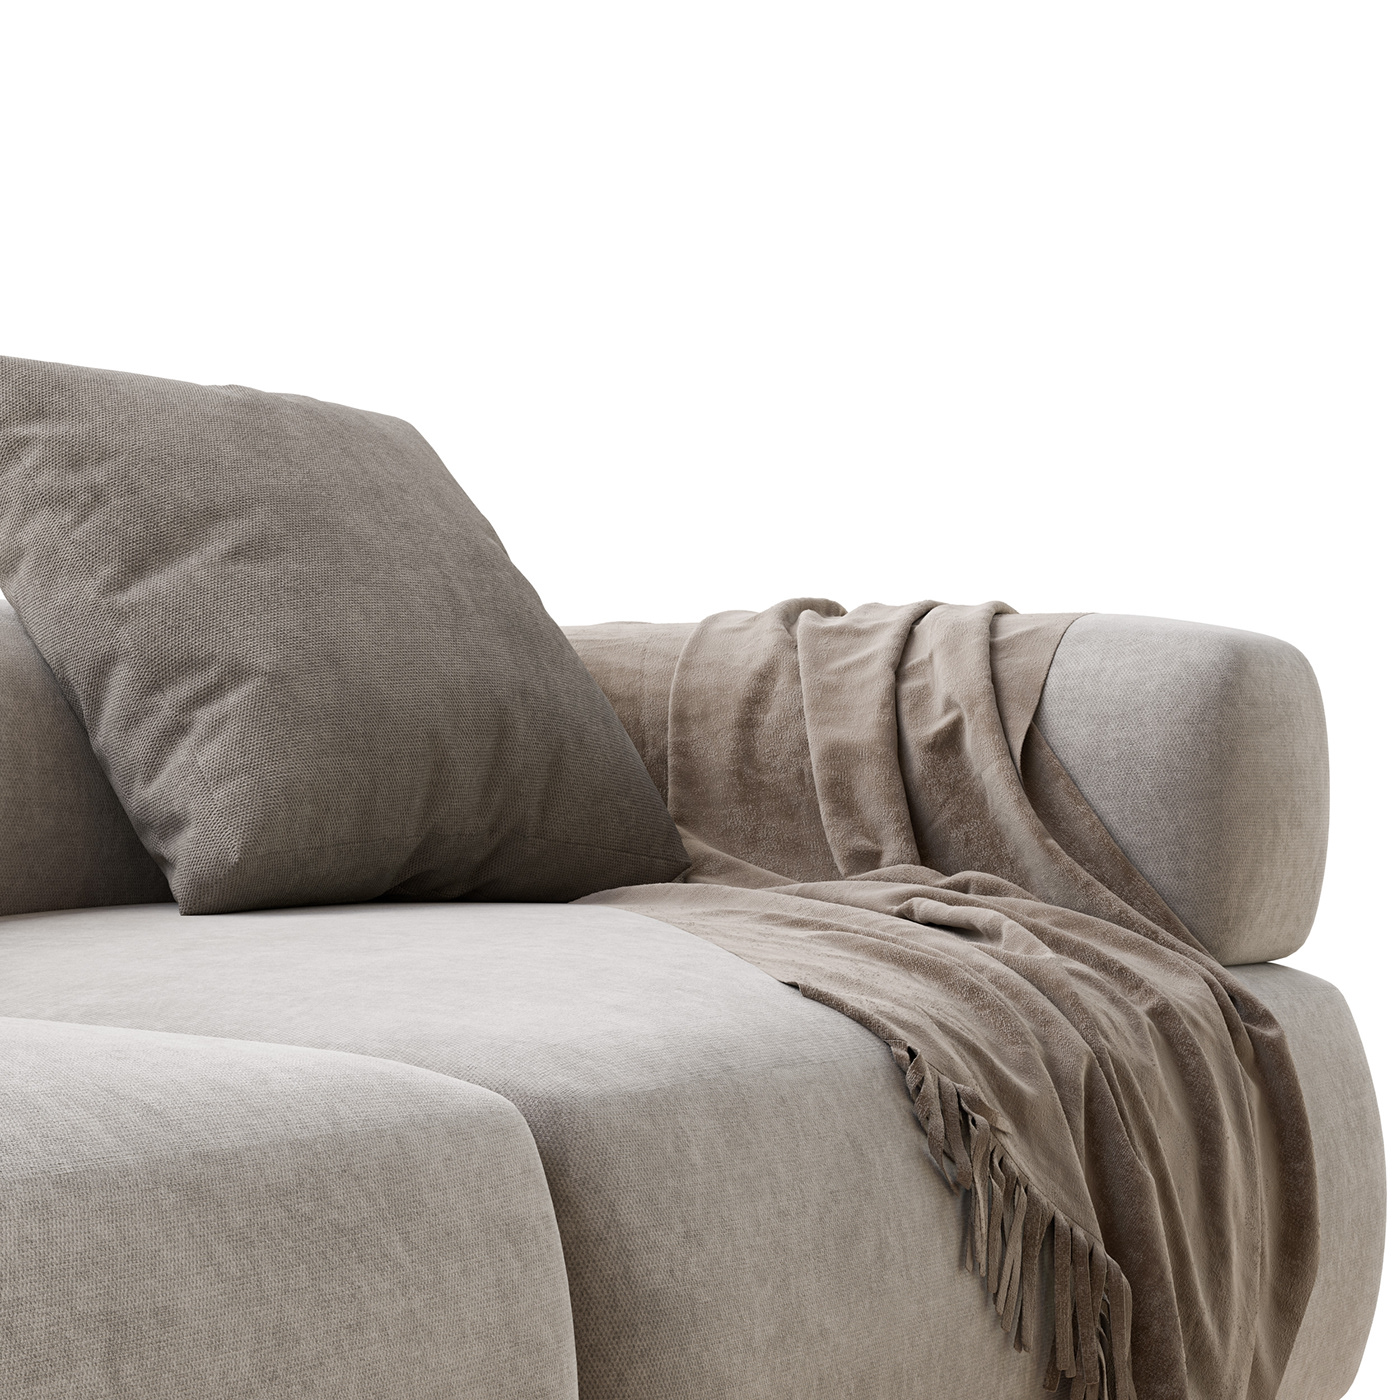 #sofa #3drender #archviz #interiordesign #3dmodel   #3dmaxvray #3dmodeling #3dmodelservices #3dobject #porada